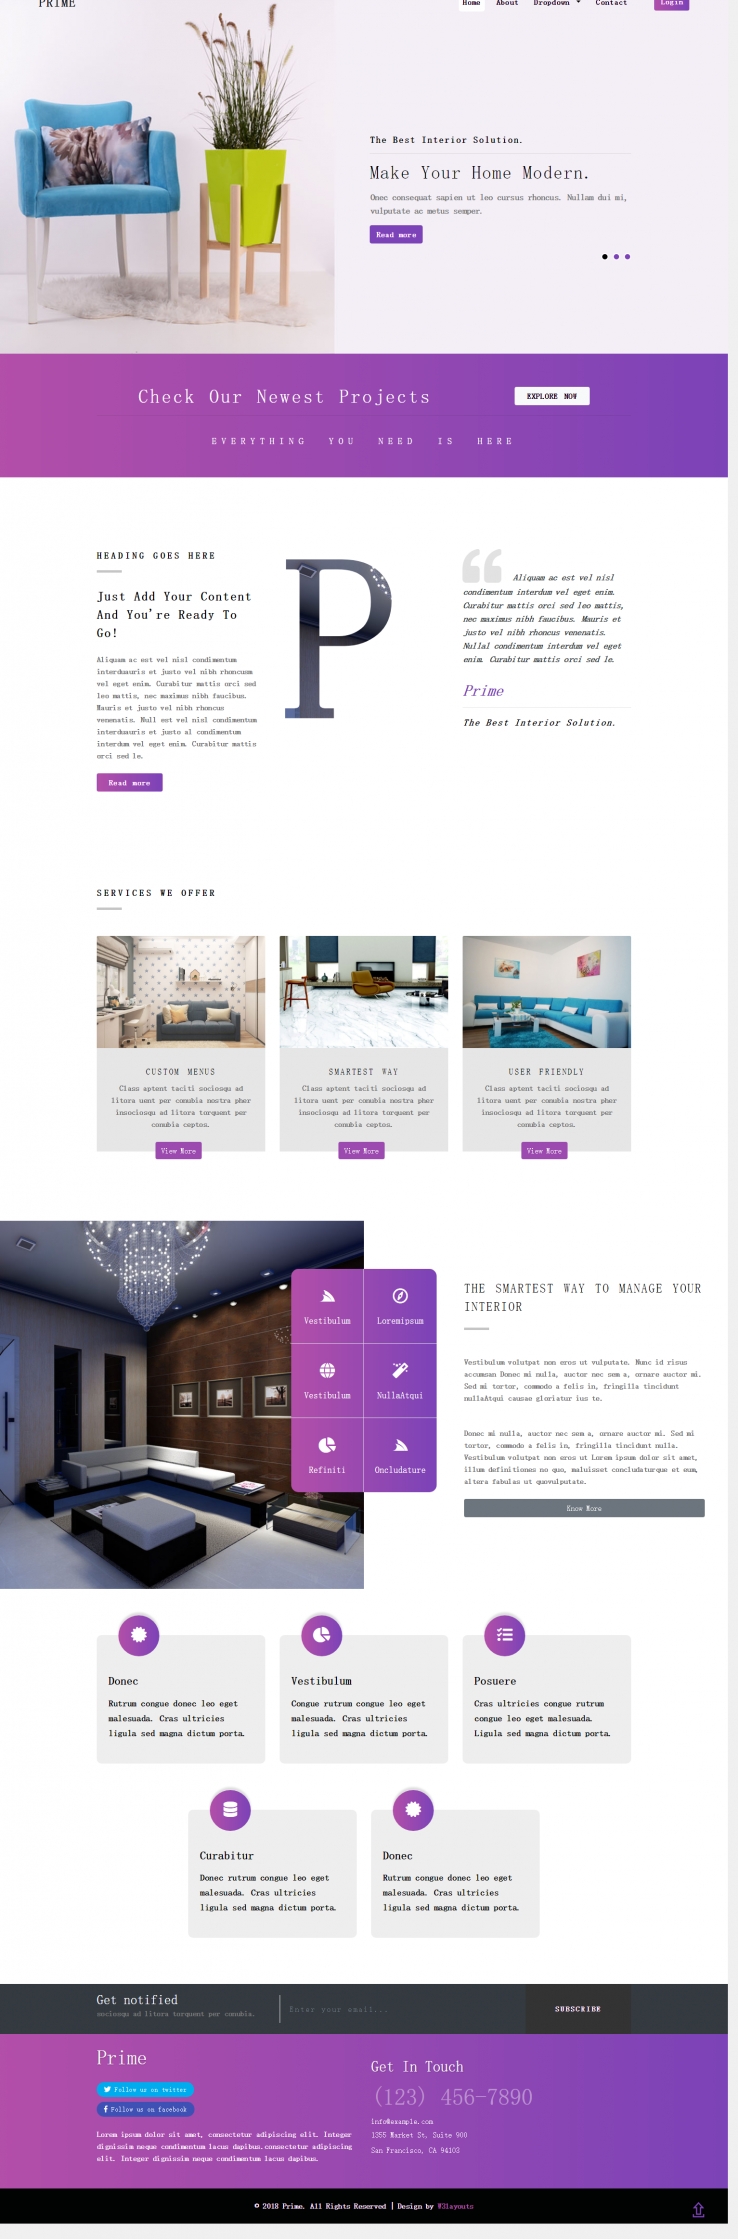 紫色简洁风格的软装设计整站网站源码下载